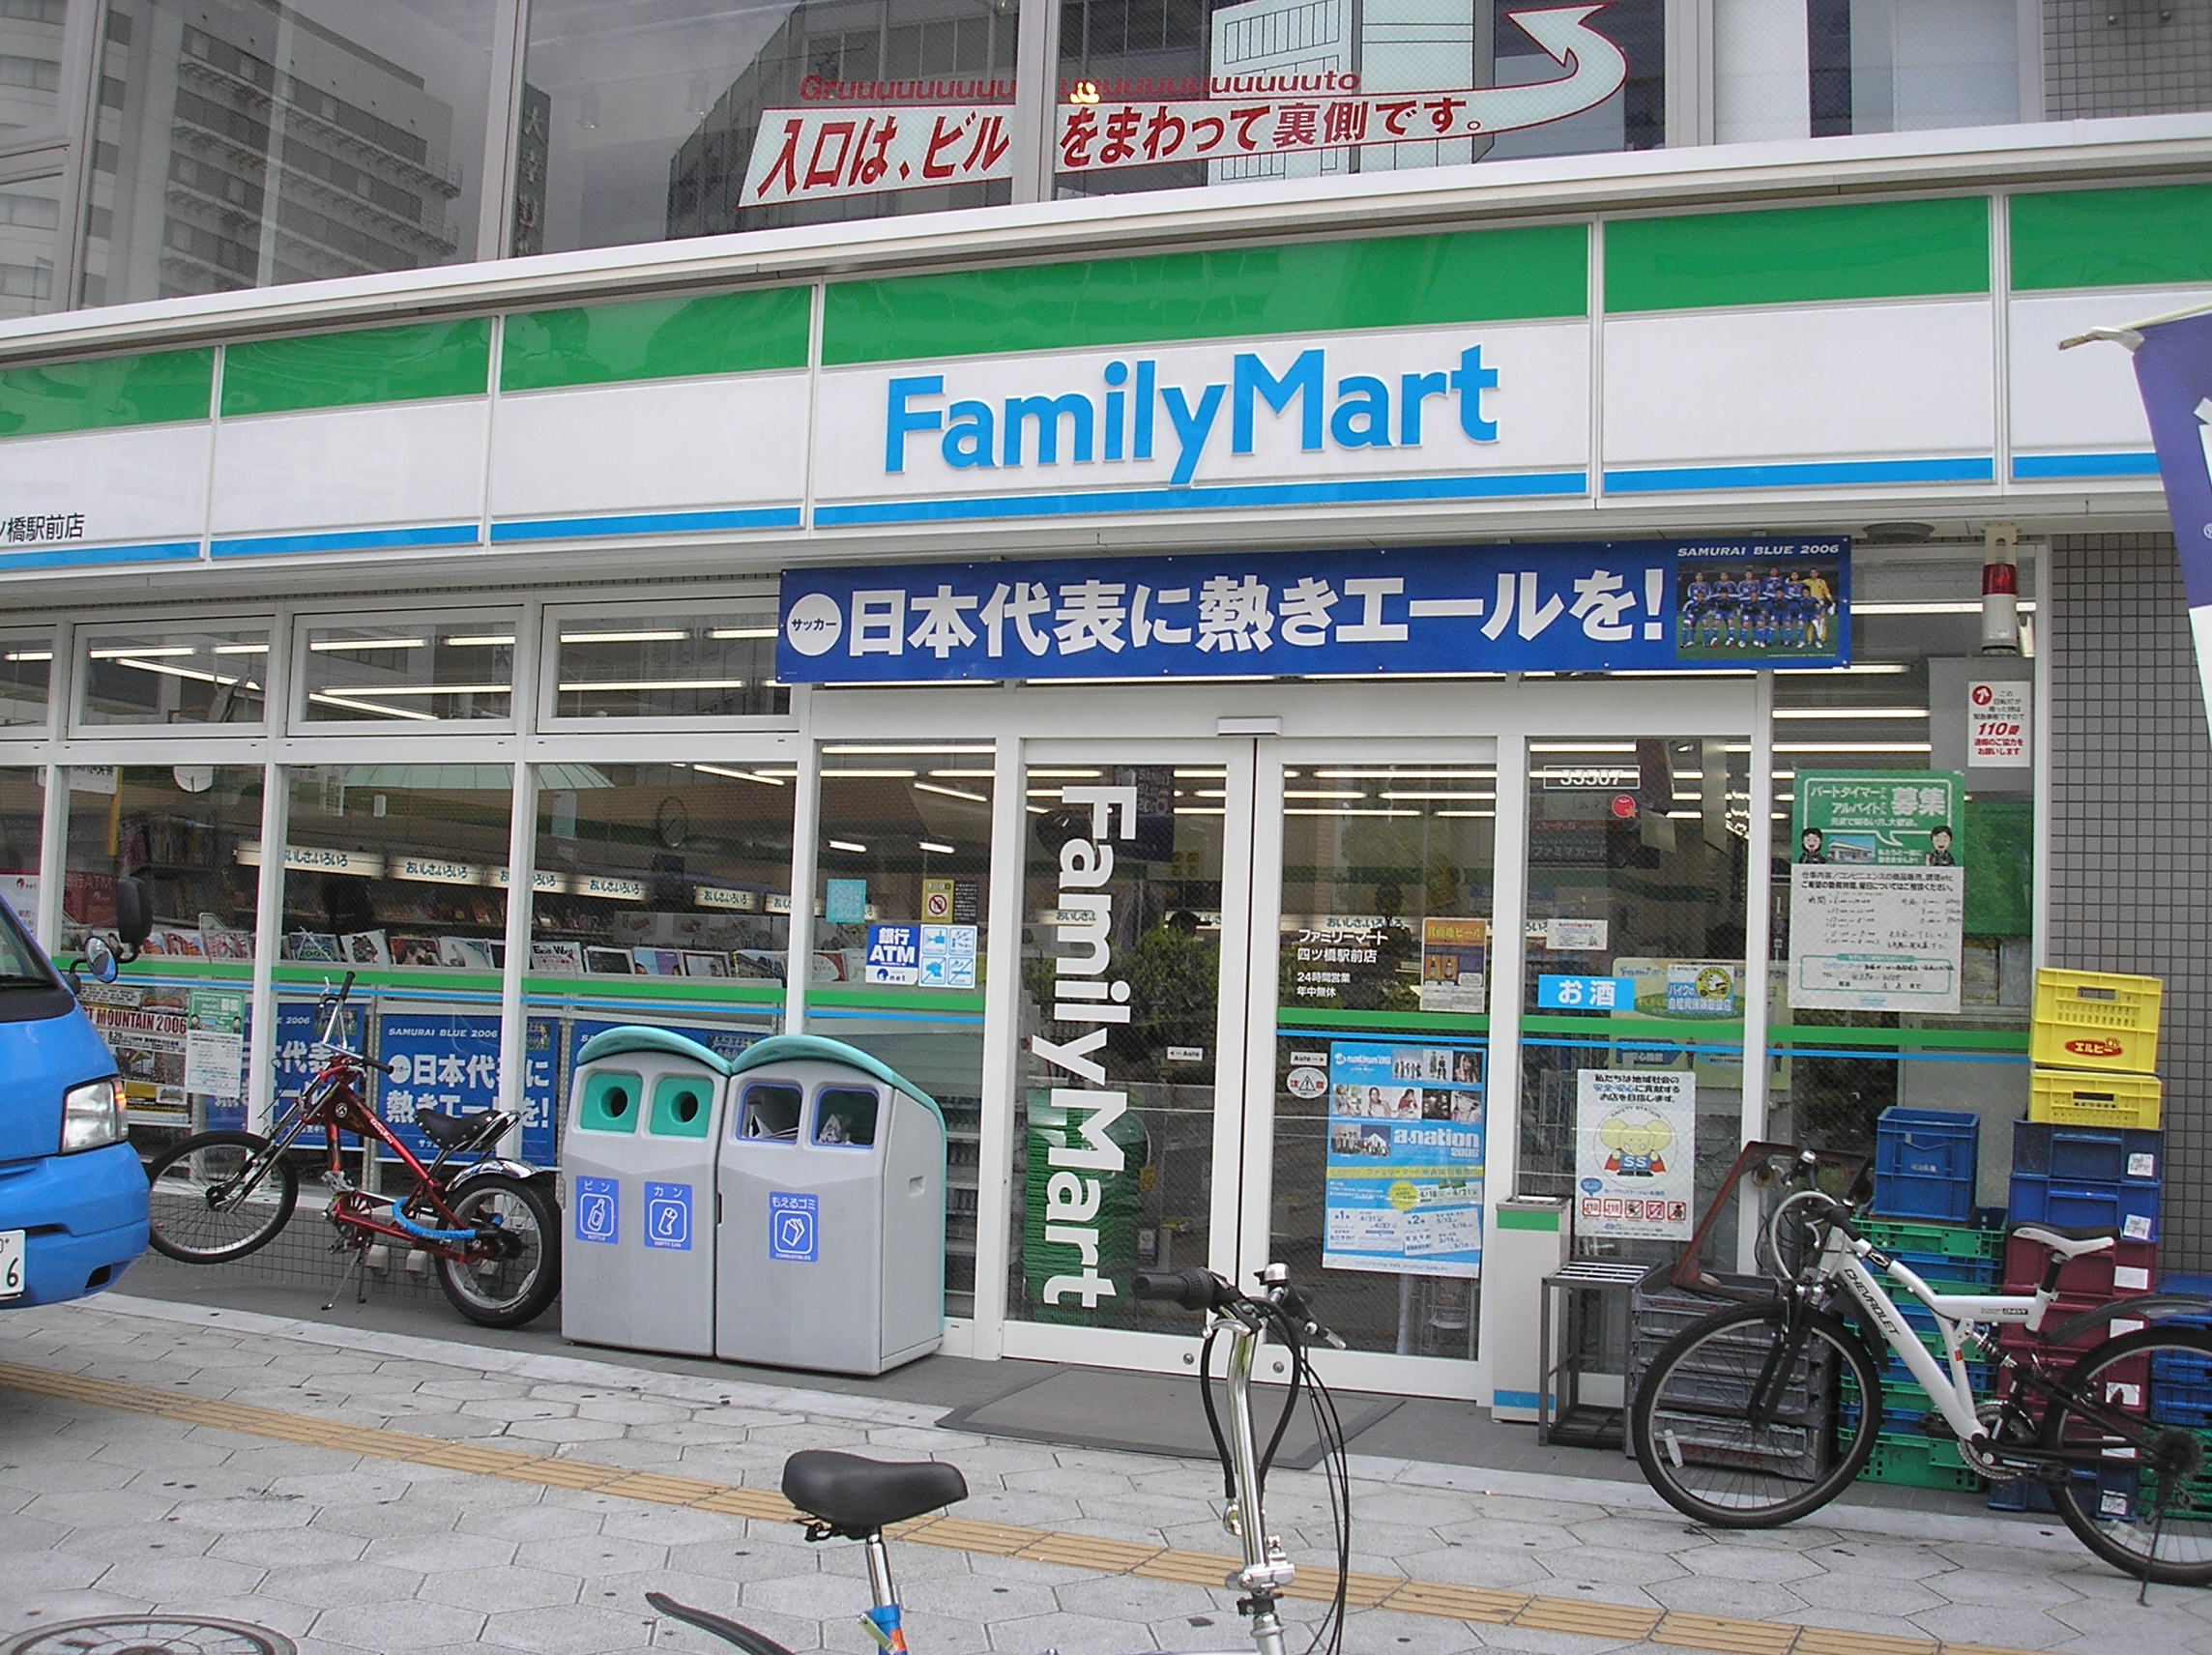 Convenience store. FamilyMart Muguruma Oyodominami store up (convenience store) 474m